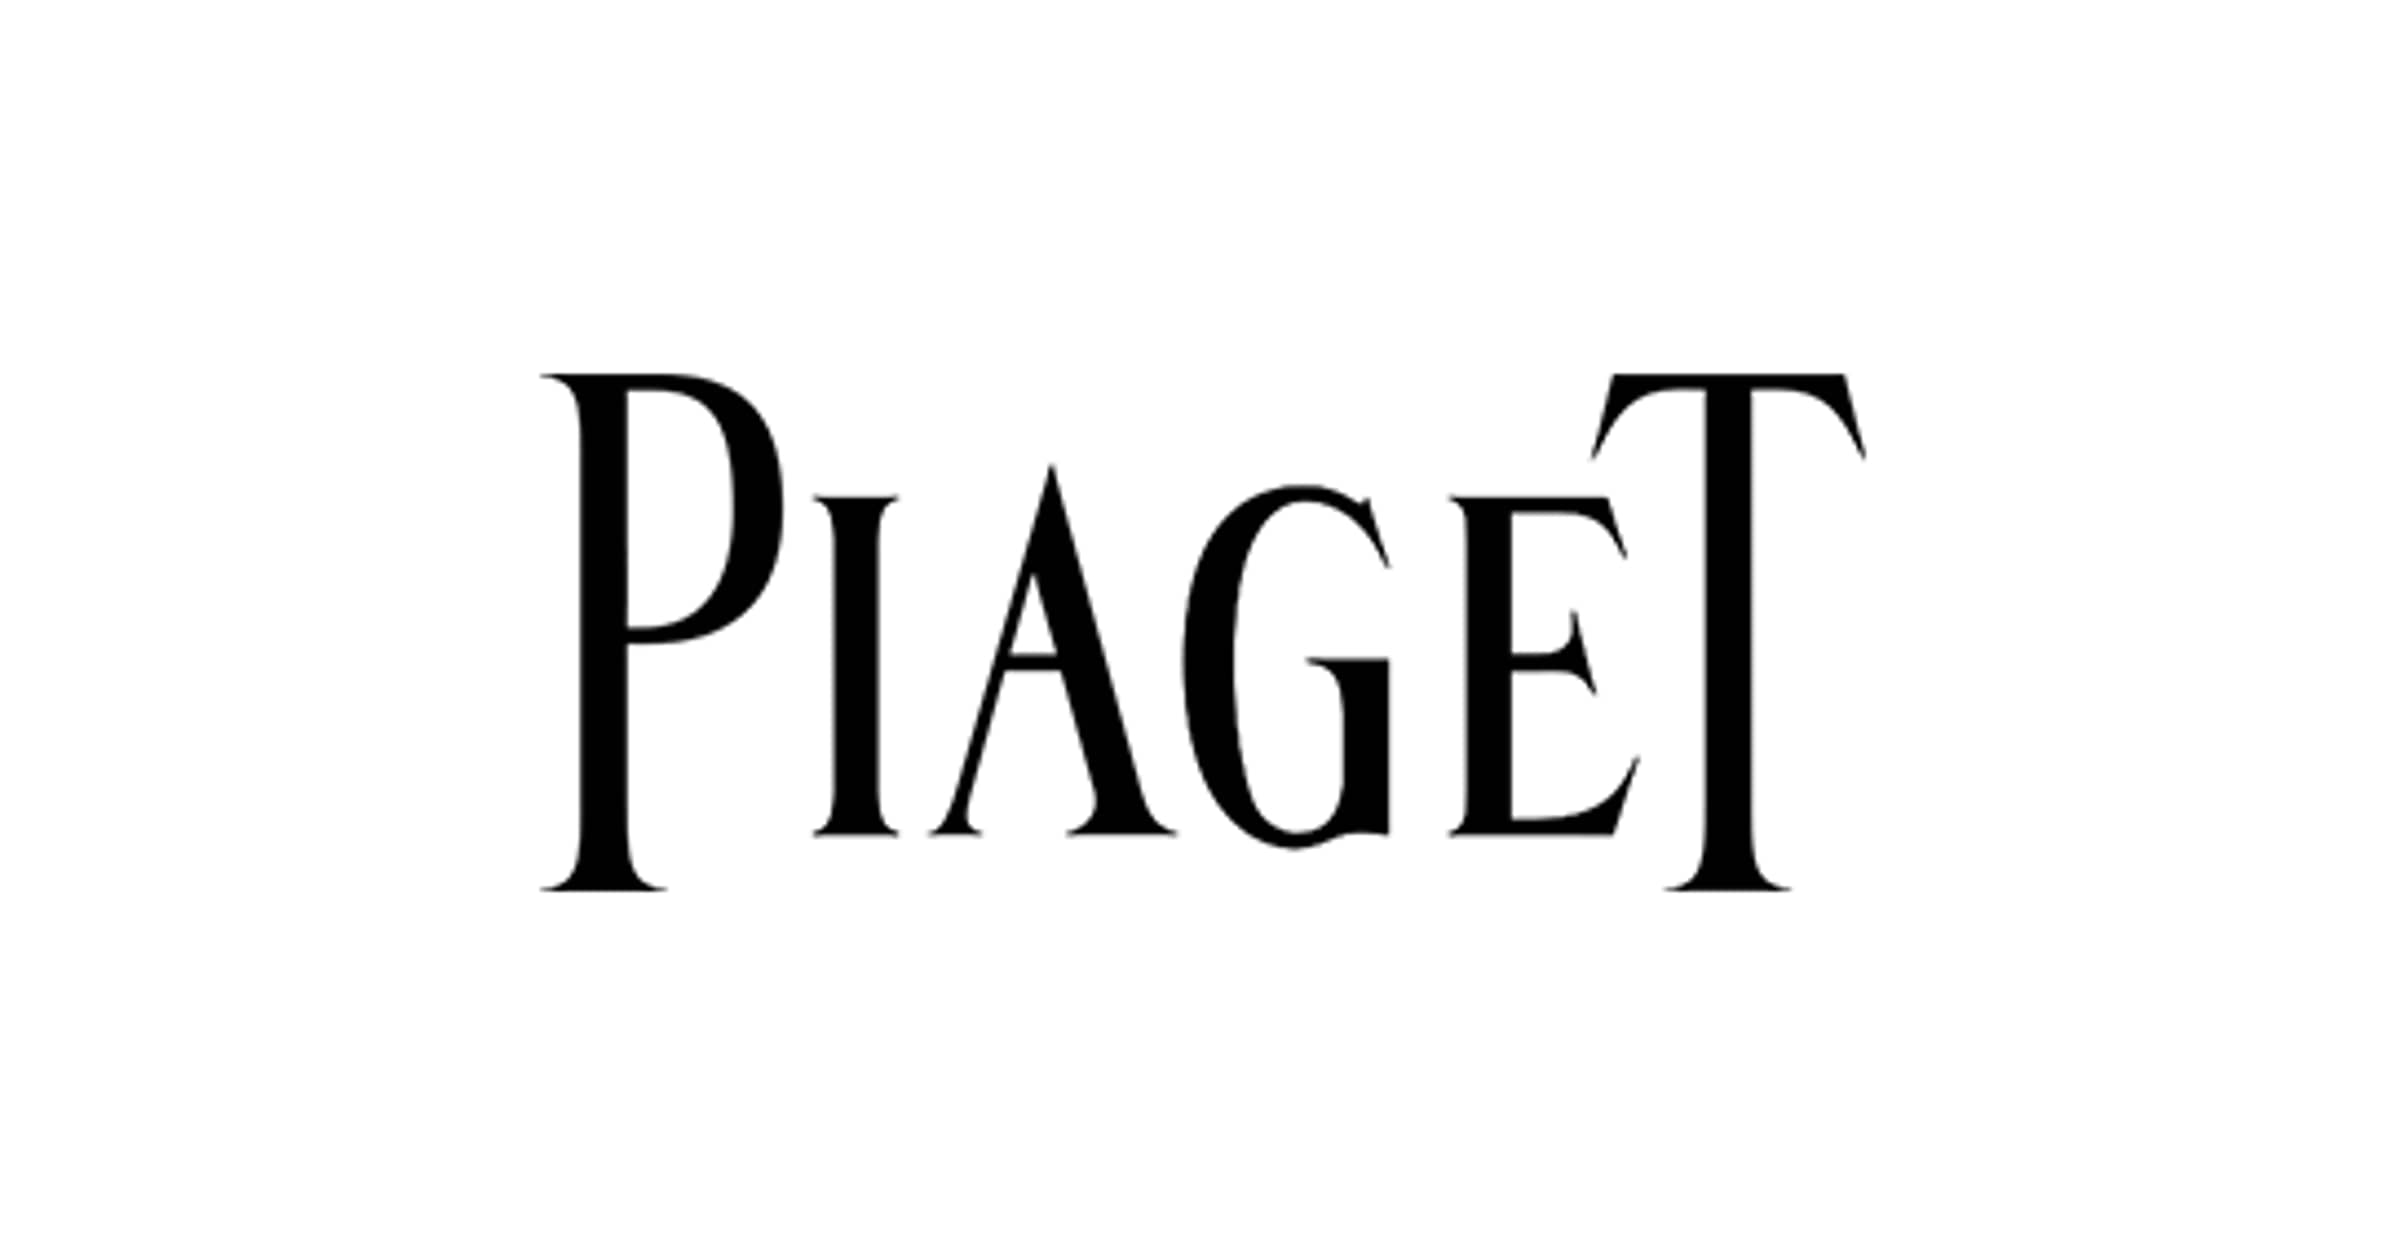 (c) Piaget.com